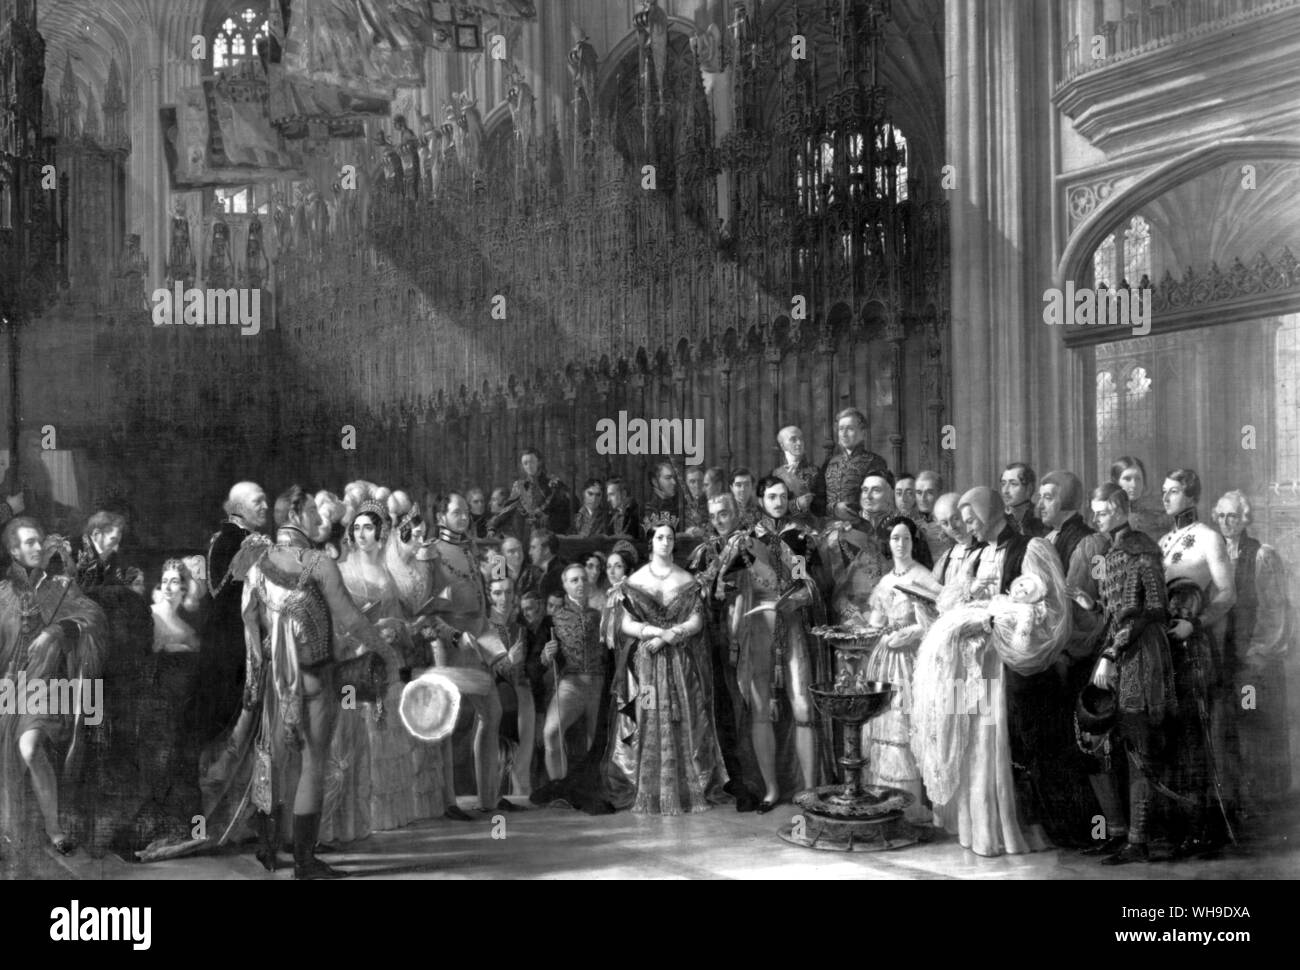 Il battesimo del principe del Galles (più tardi Re Edoardo VII) al Castello di Windsor in 1842. Humboldt ha trovato grande splendore alla corte inglese, ma un modo di vita che è stato naturale e cordiale. Foto Stock